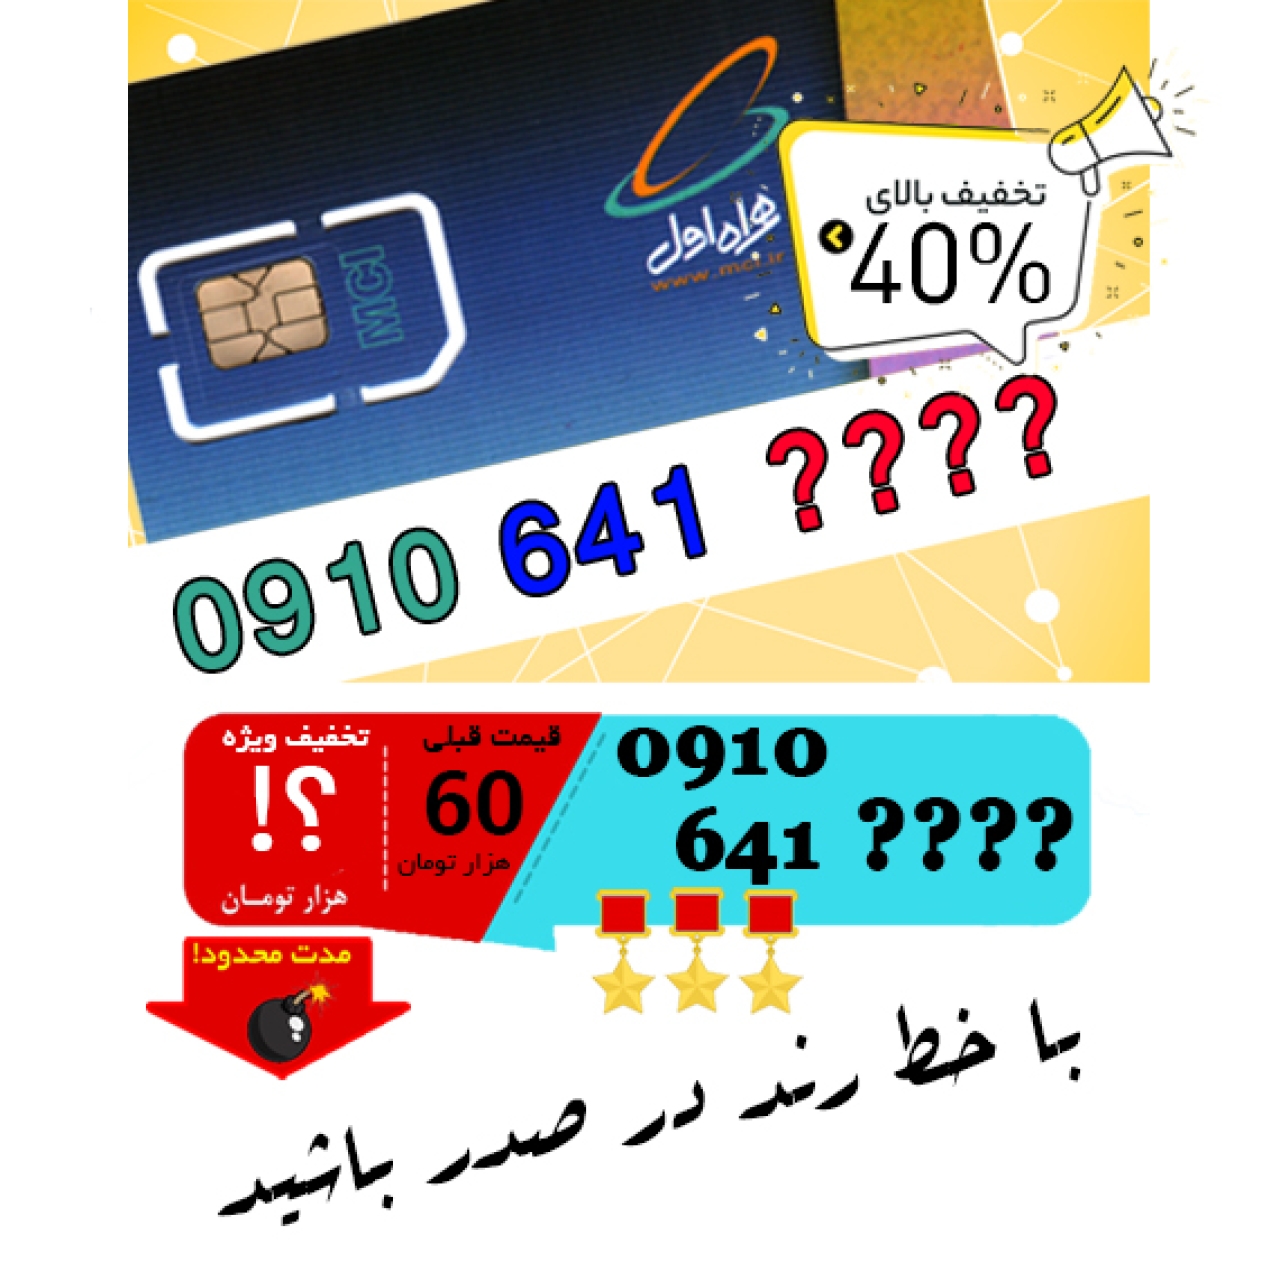 حراج سیم کارت اعتباری همراه اول 0910641